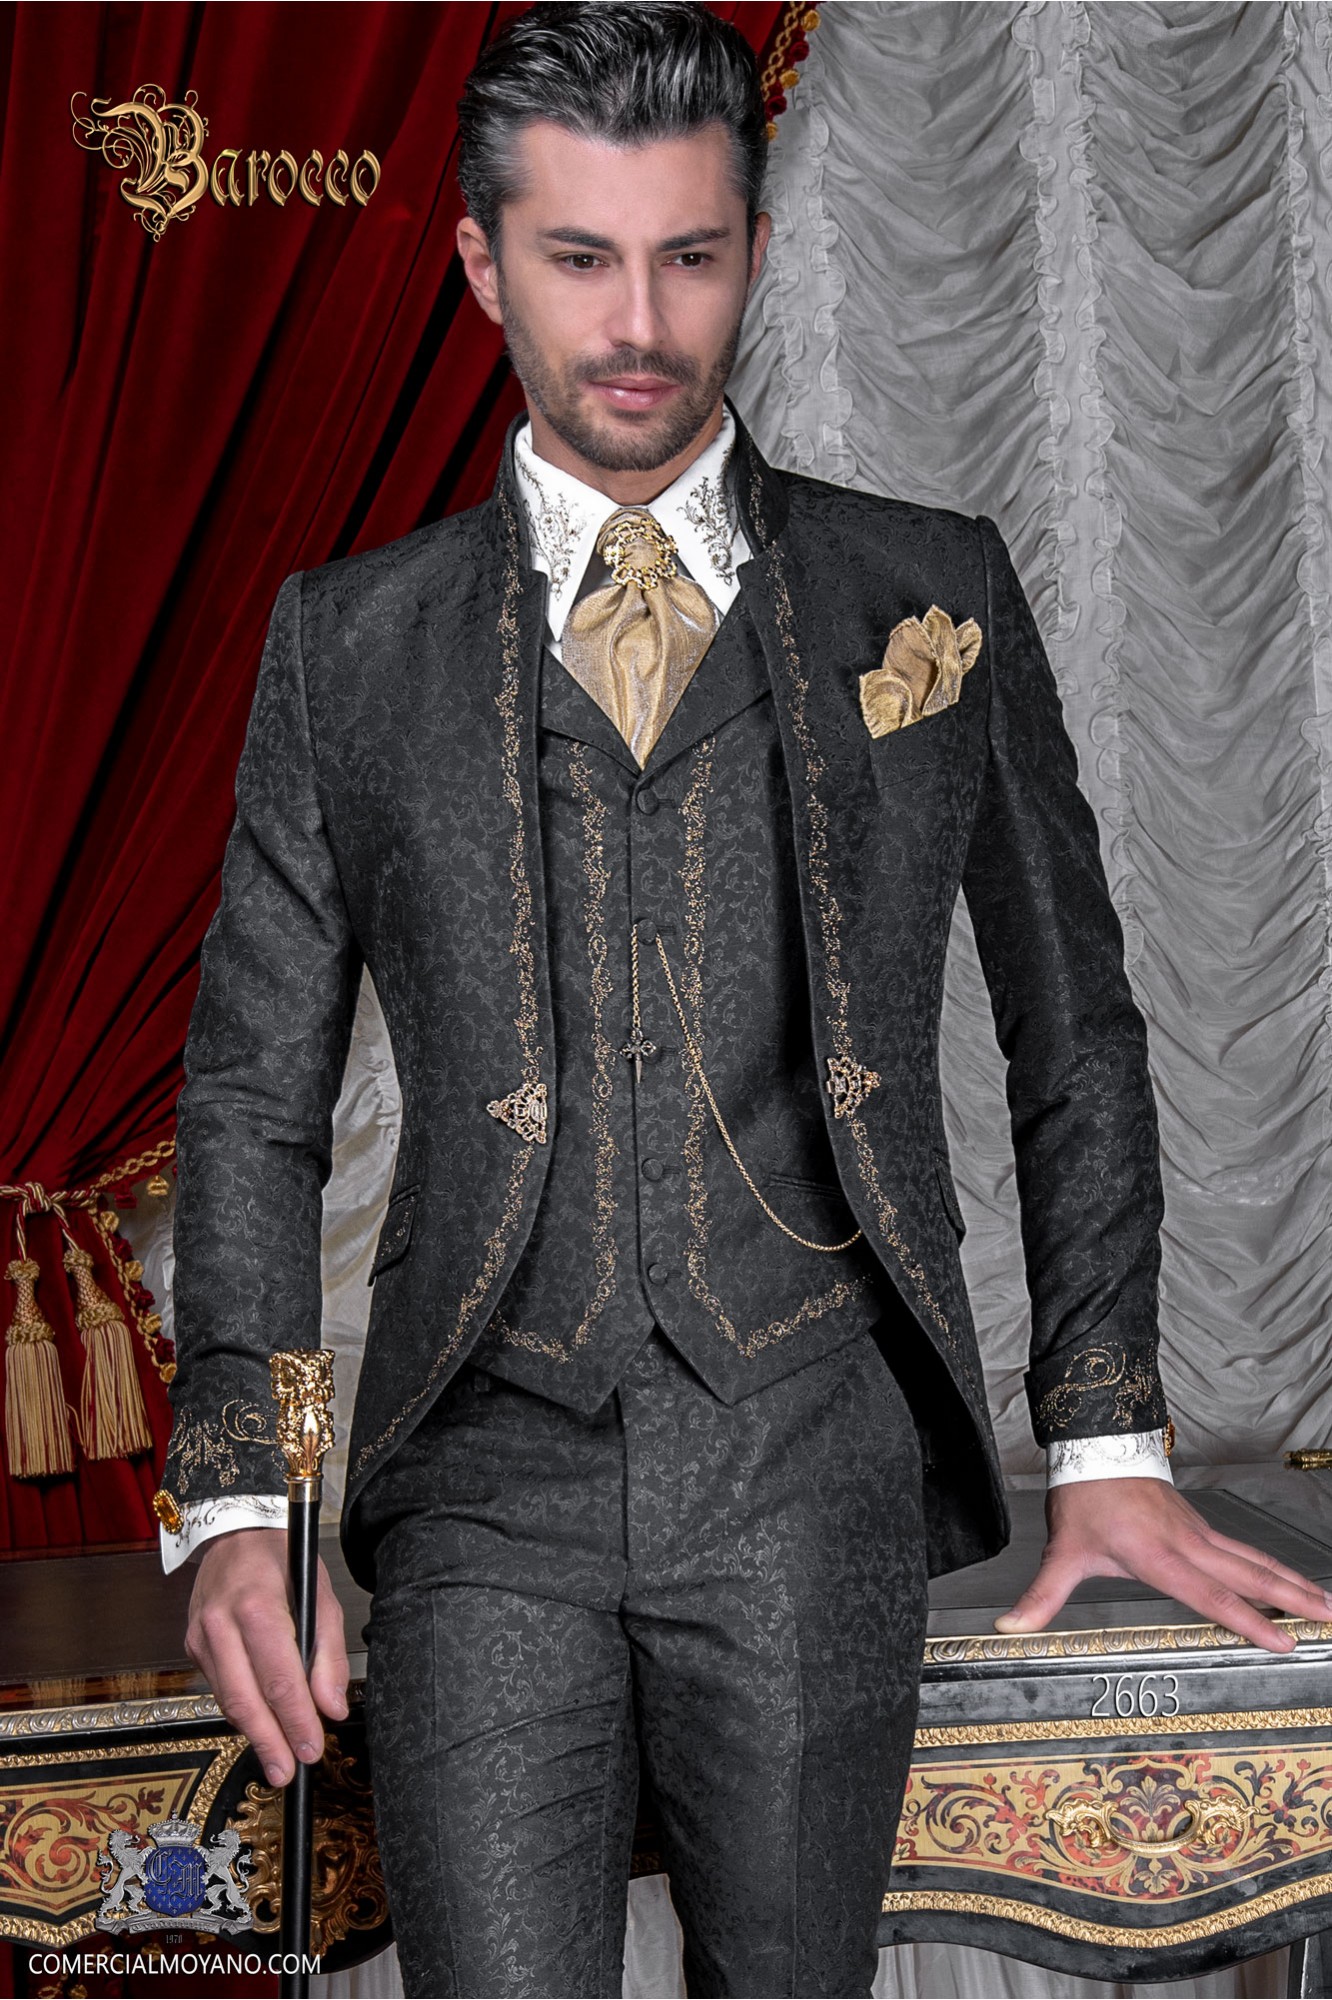 Traje de novio barroco, levita de época cuello mao en tejido jacquard negro con bordados dorados y broche de cristal modelo: 2663 Mario Moyano colección Barroco